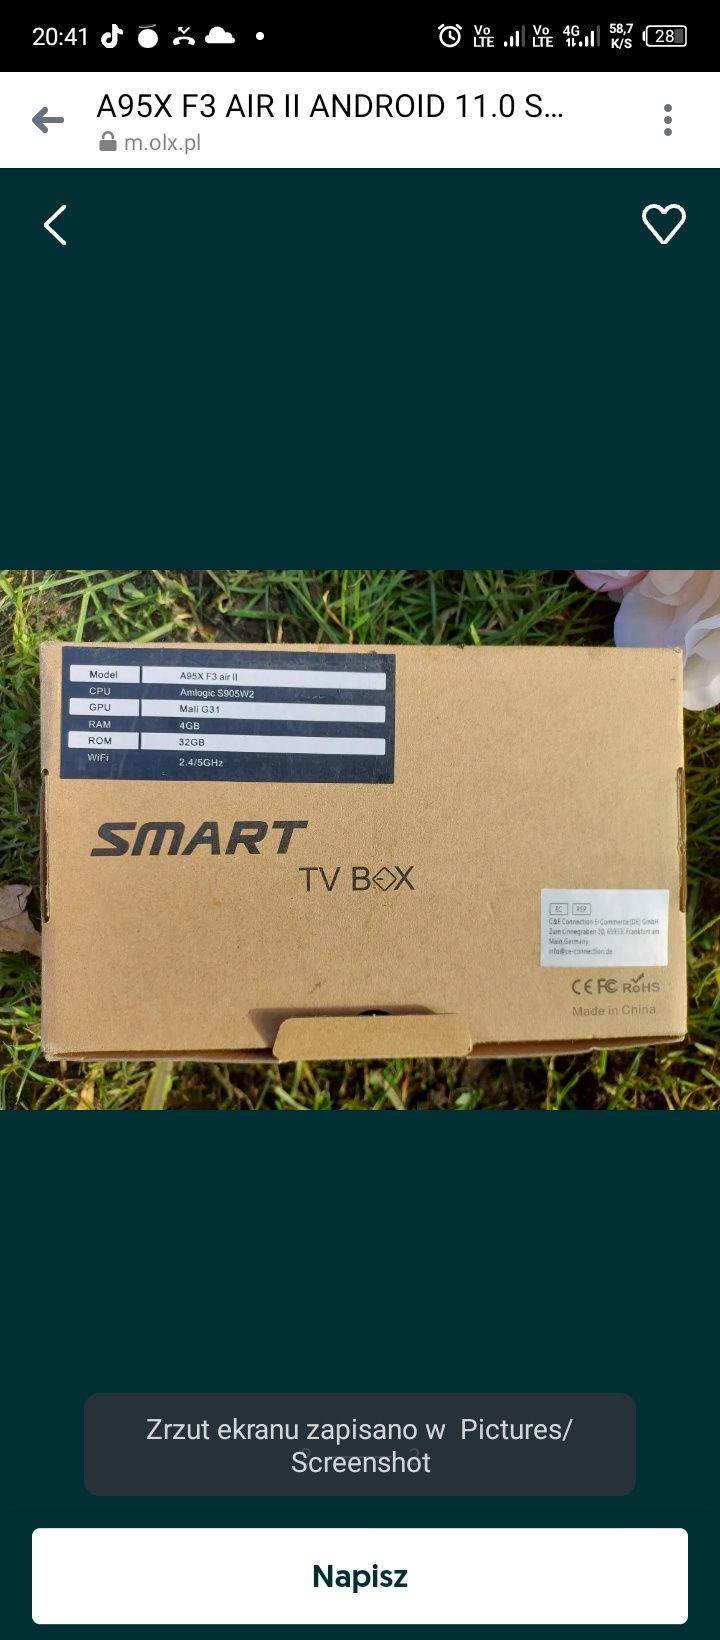 A95X F3 AIR II ANDROID 11.0 Smart TV BOX 4 GB 32 GB